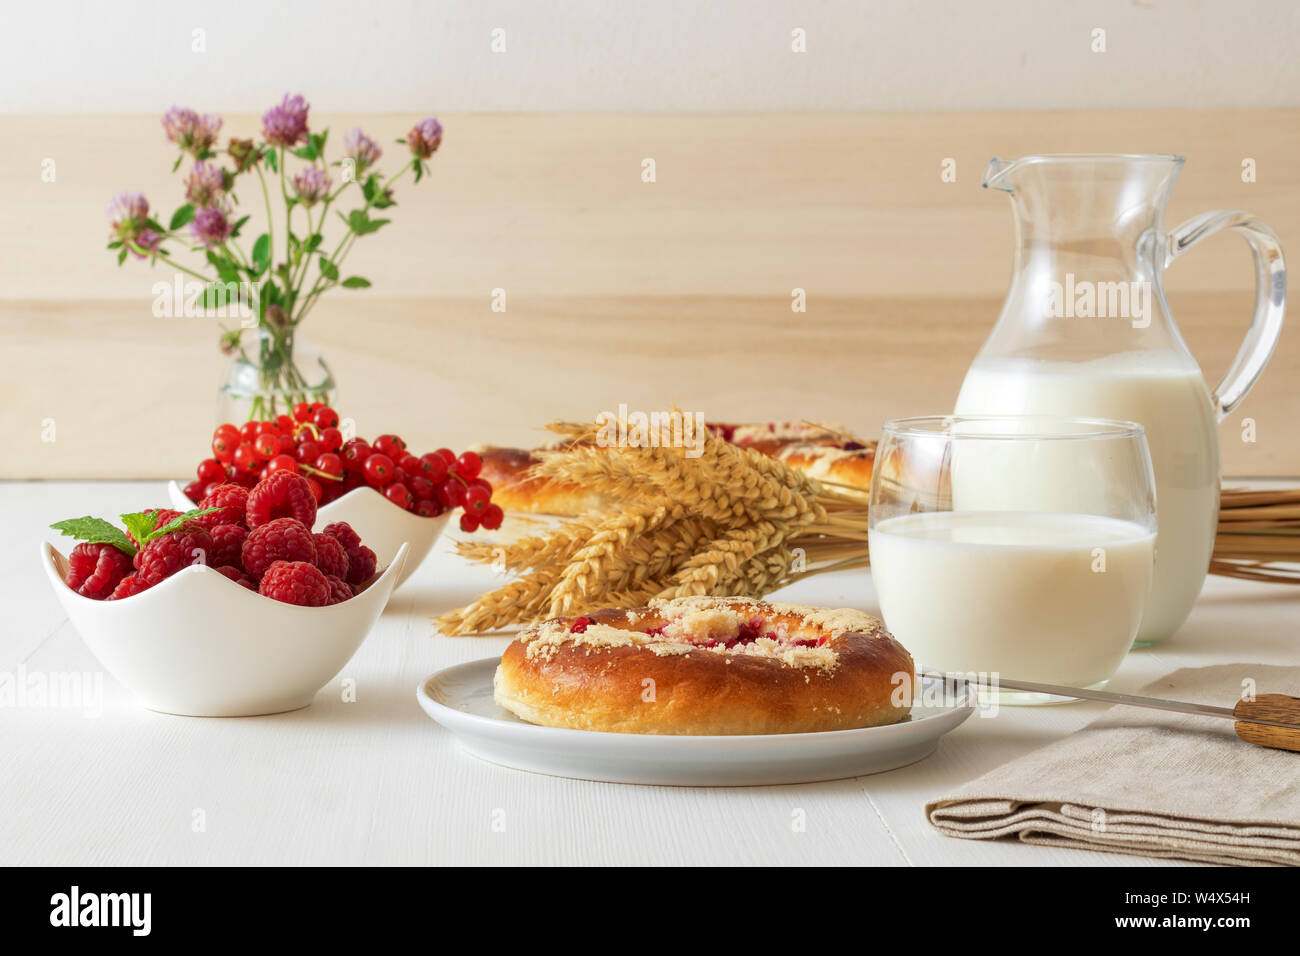 Weißer Tisch mit Yeasty süßes Gebäck mit frischen Johannisbeeren und Himbeeren und Streusel Topping, Glas und Krug Milch, garbe von Weizen, kleines Glas Stockfoto